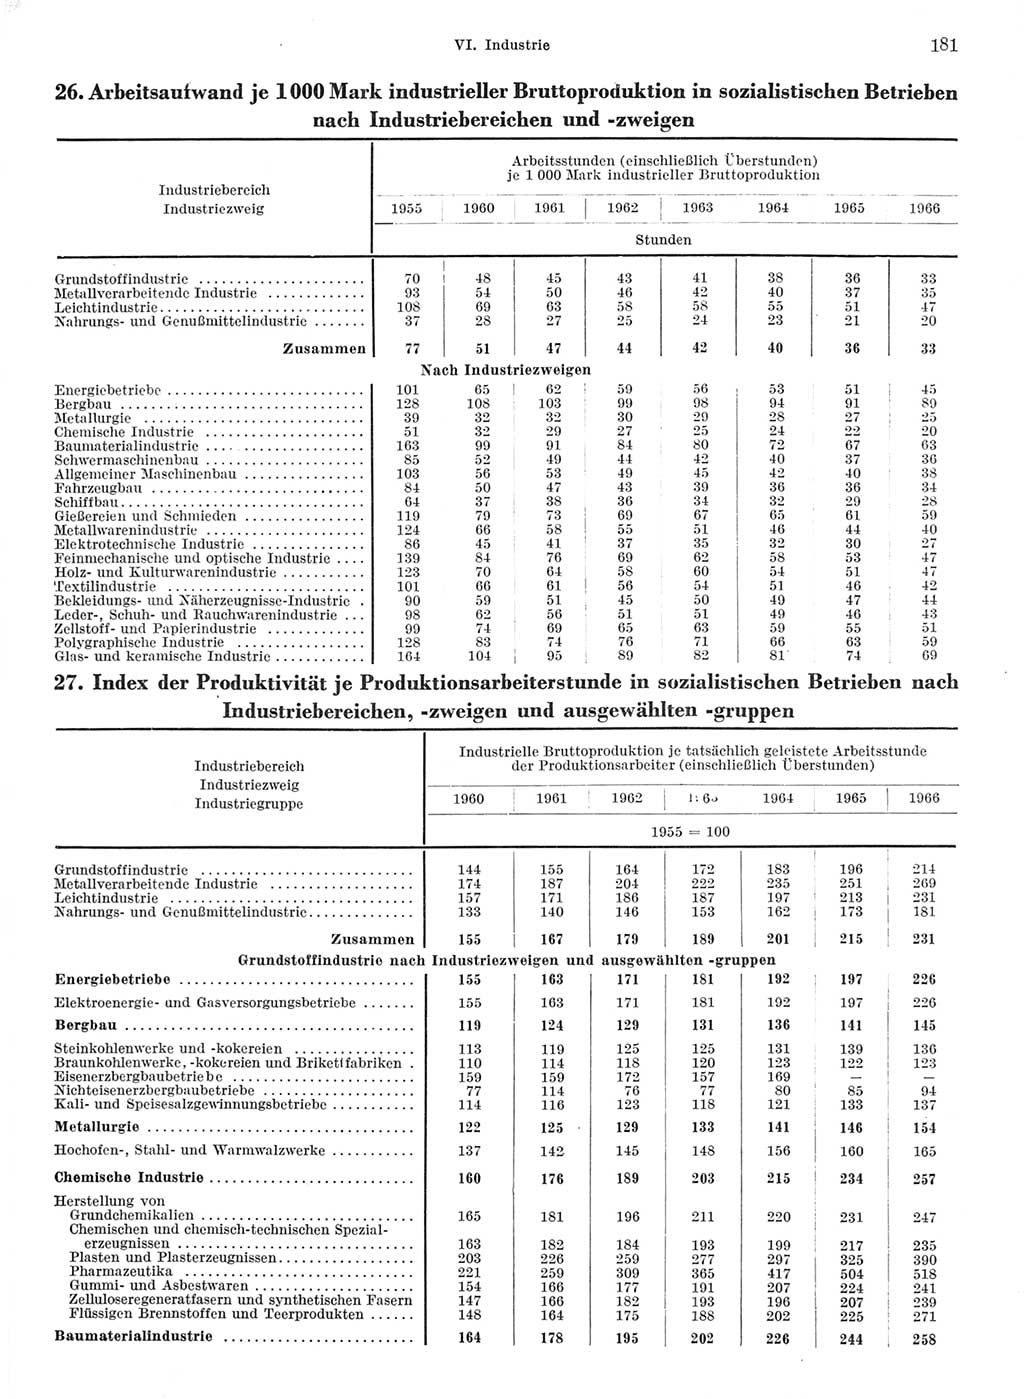 Statistisches Jahrbuch der Deutschen Demokratischen Republik (DDR) 1968, Seite 181 (Stat. Jb. DDR 1968, S. 181)